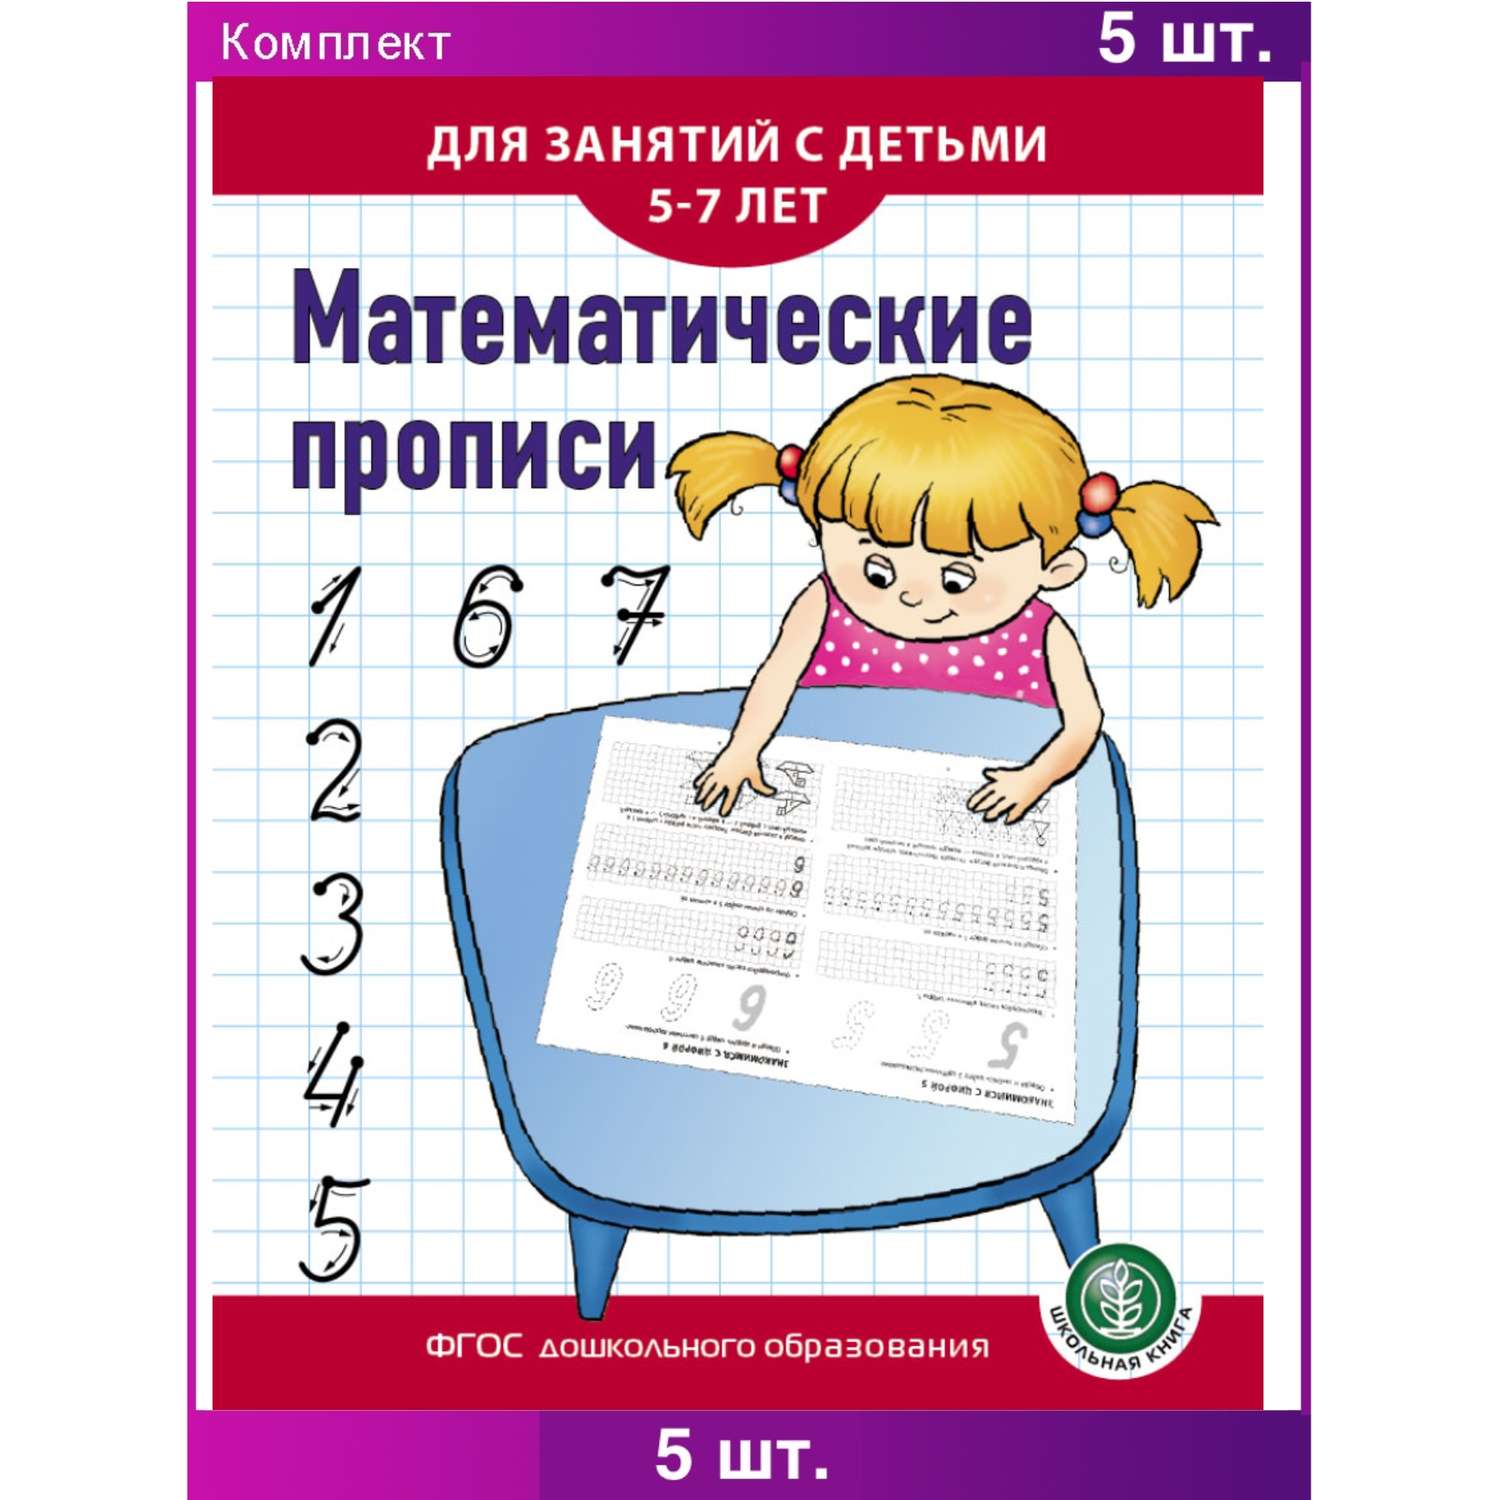 Комплект из 5 одинаковых книг Школьная Книга Математические прописи Для занятий с детьми 5-7 лет - фото 2